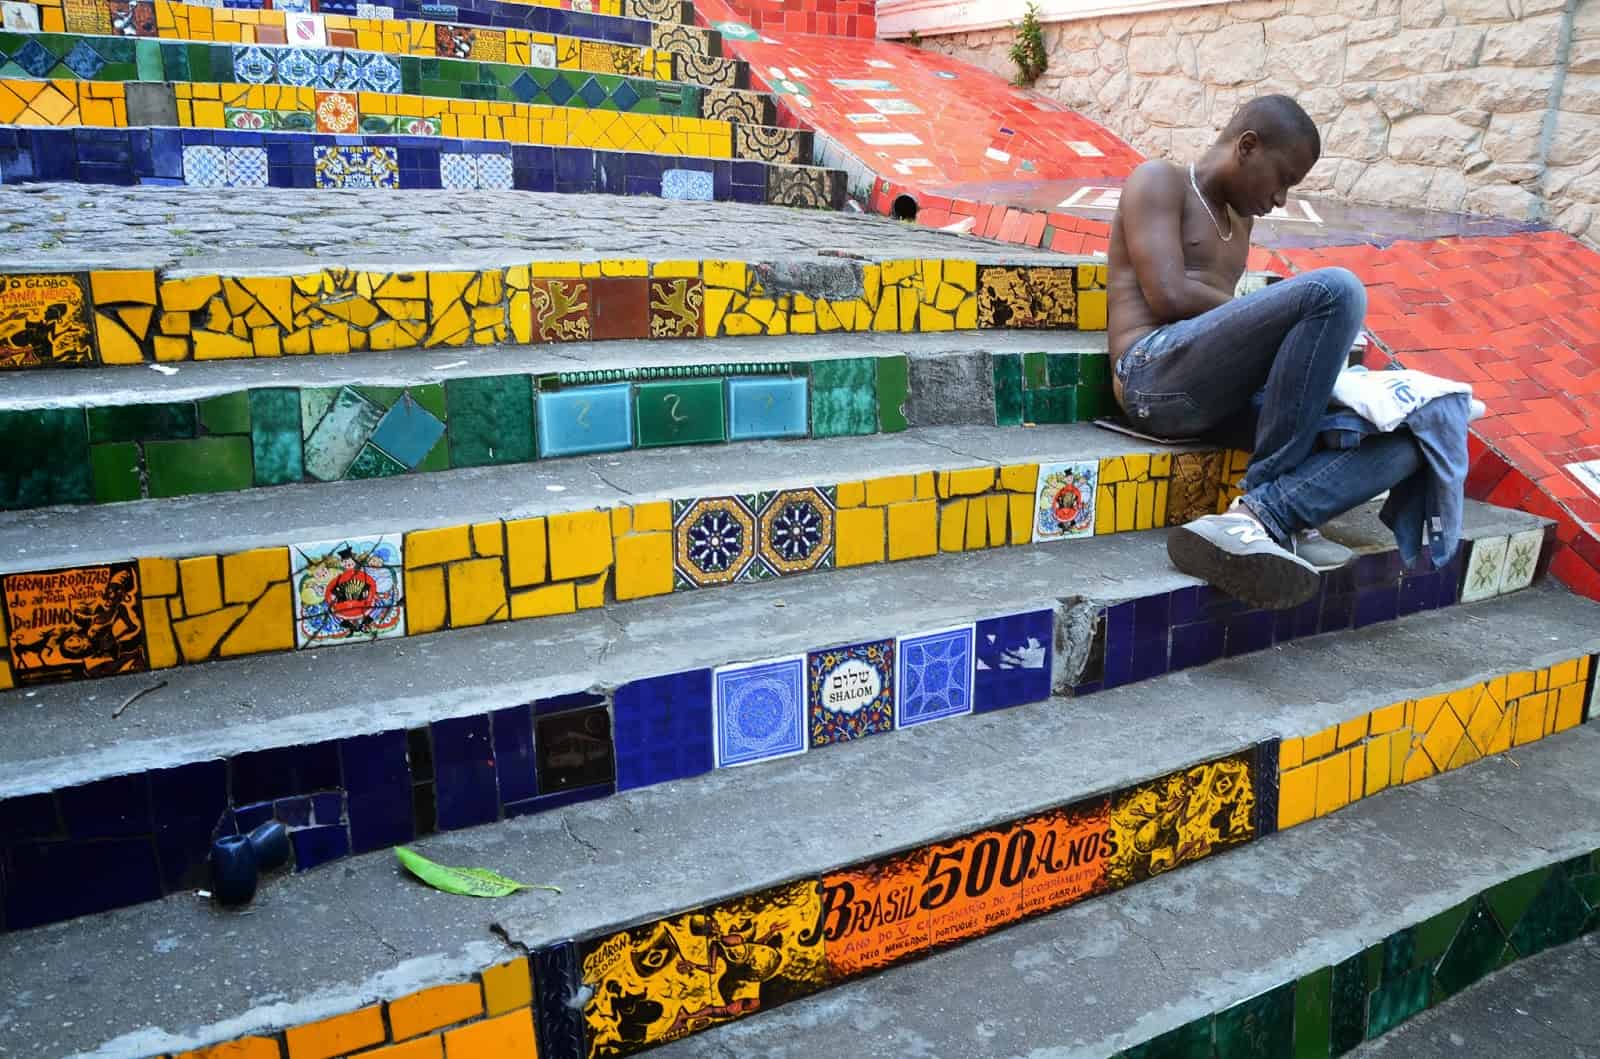 Escadaria Selarón in Rio de Janeiro, Brazil